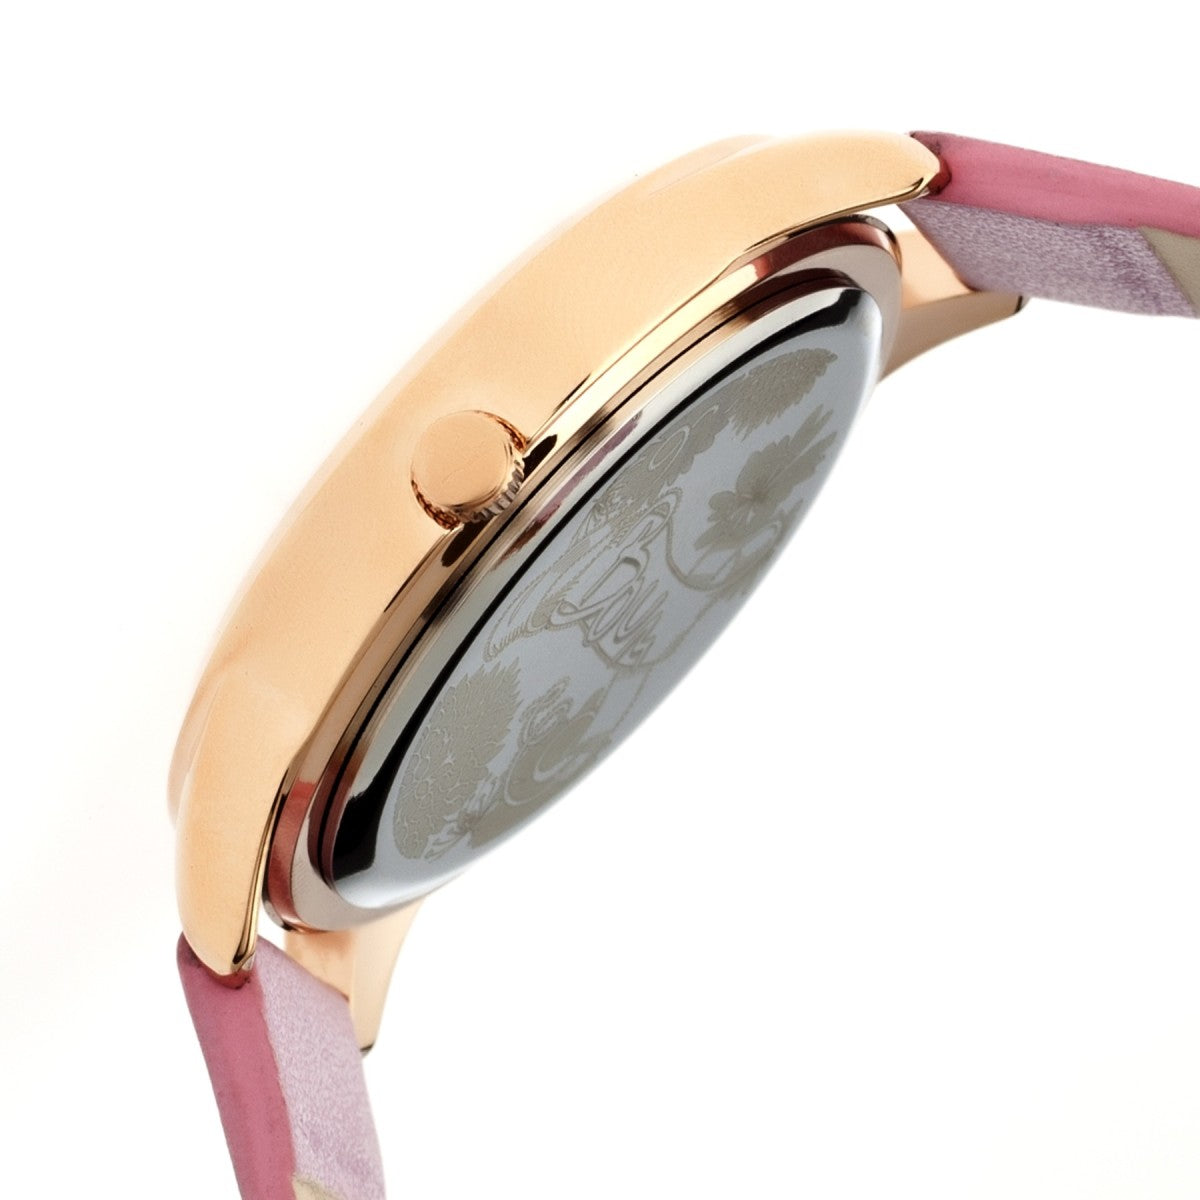 Boum Clique Crystal-Dial Ladies Bracelet Watch - Rose Gold/Pink - BOUBM2506